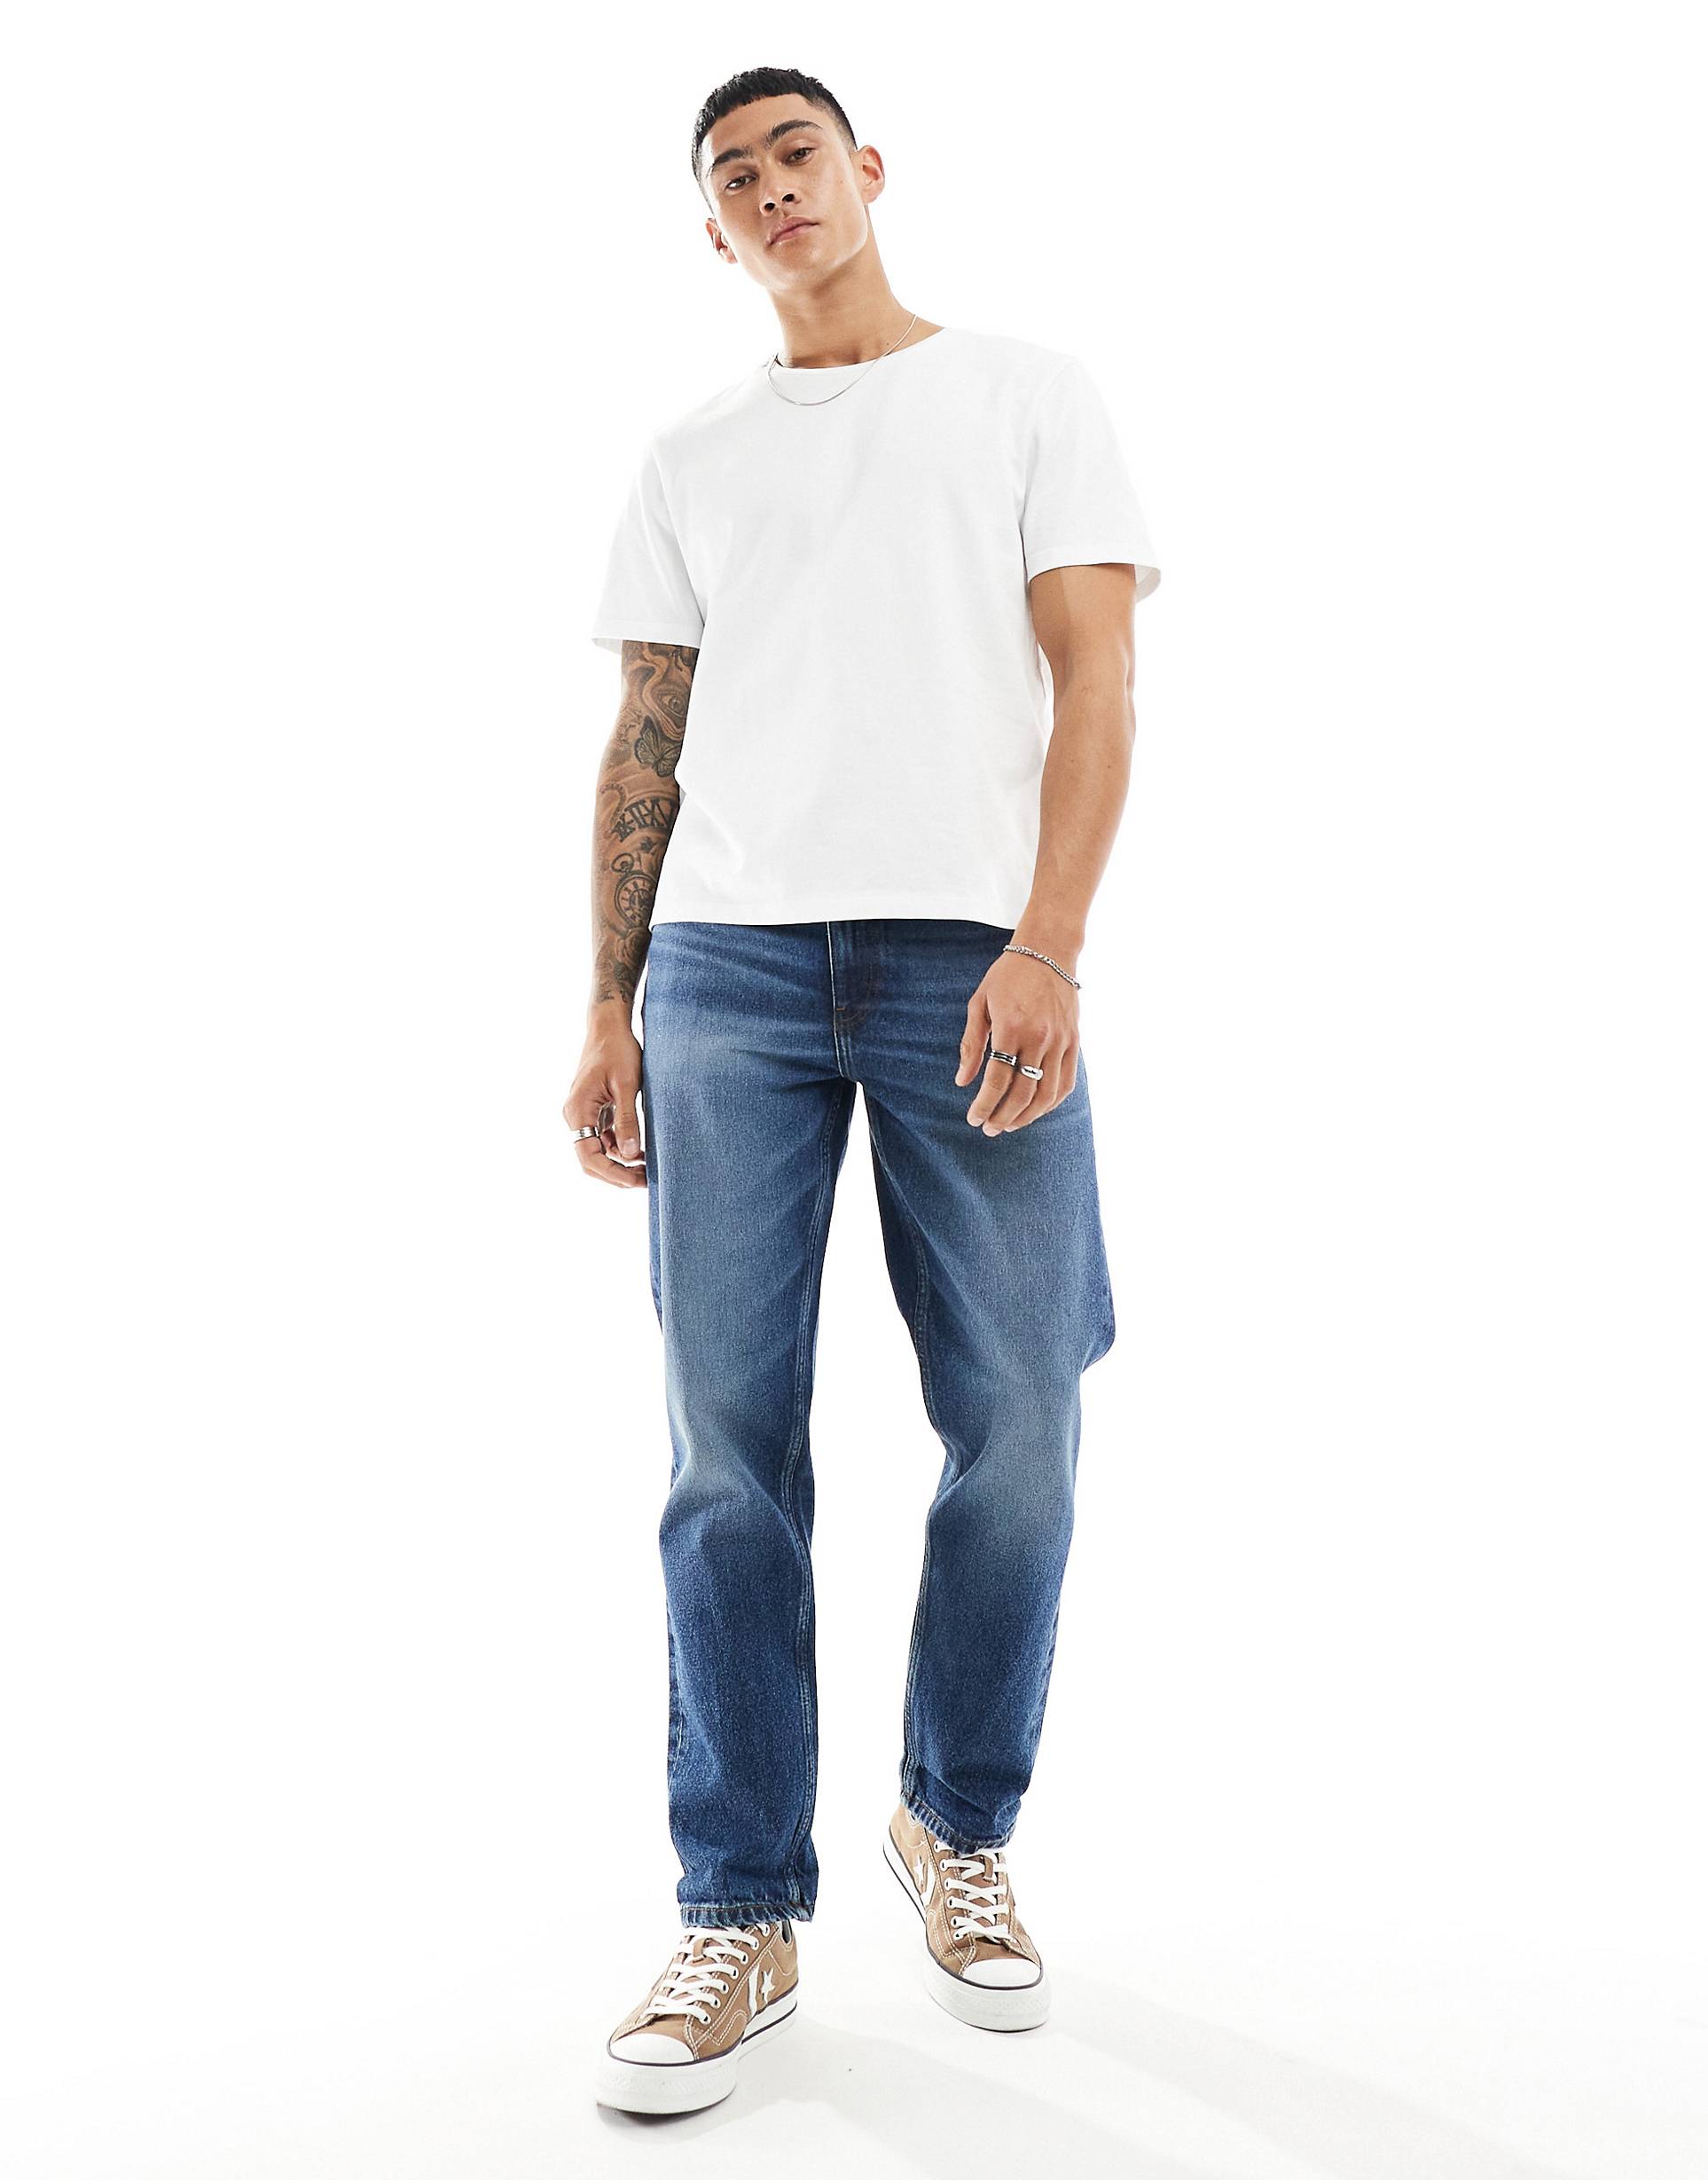 Джинсы Asos Design Straight Leg, синий джинсы asos для беременных 48 размер